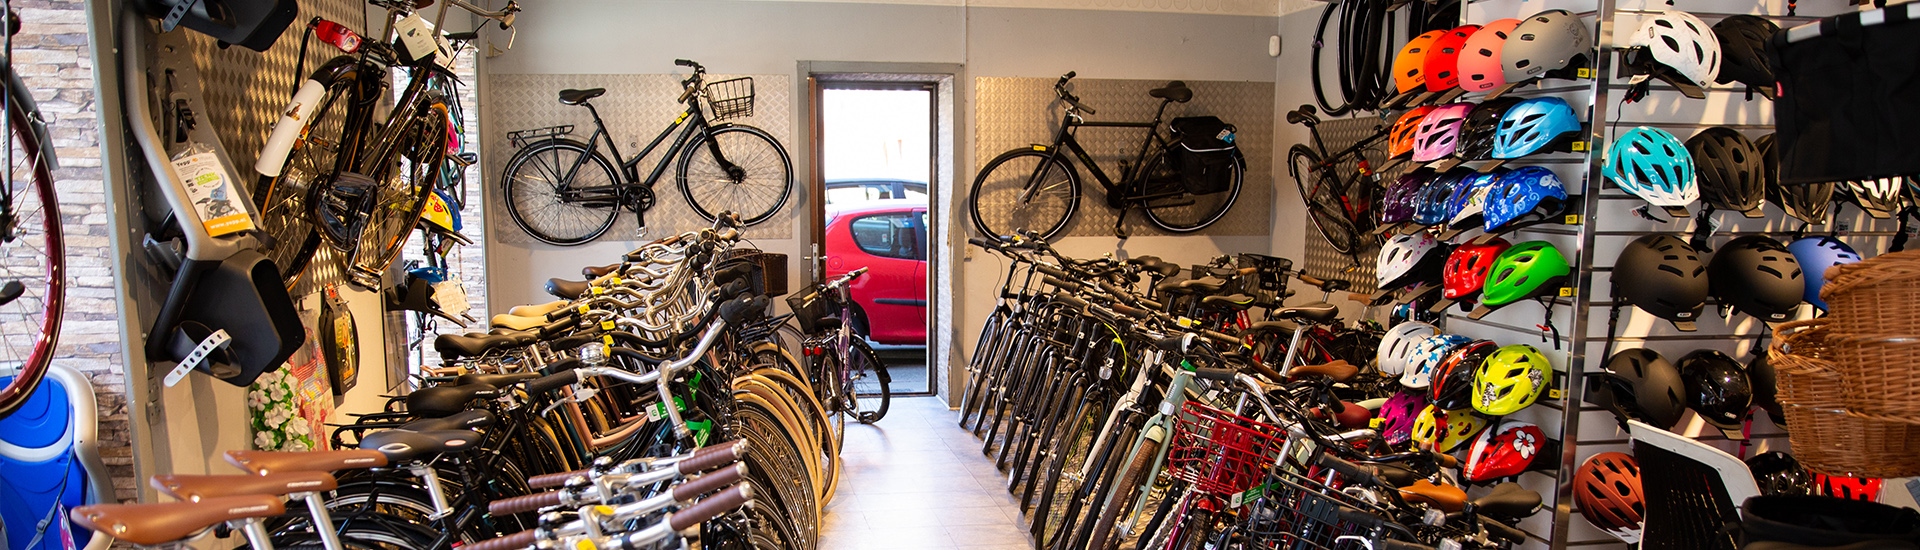 Abundantly Observation Troubled Cykelhandler i Sydhavn | Cykelsmed ved Christianshavn og Amager